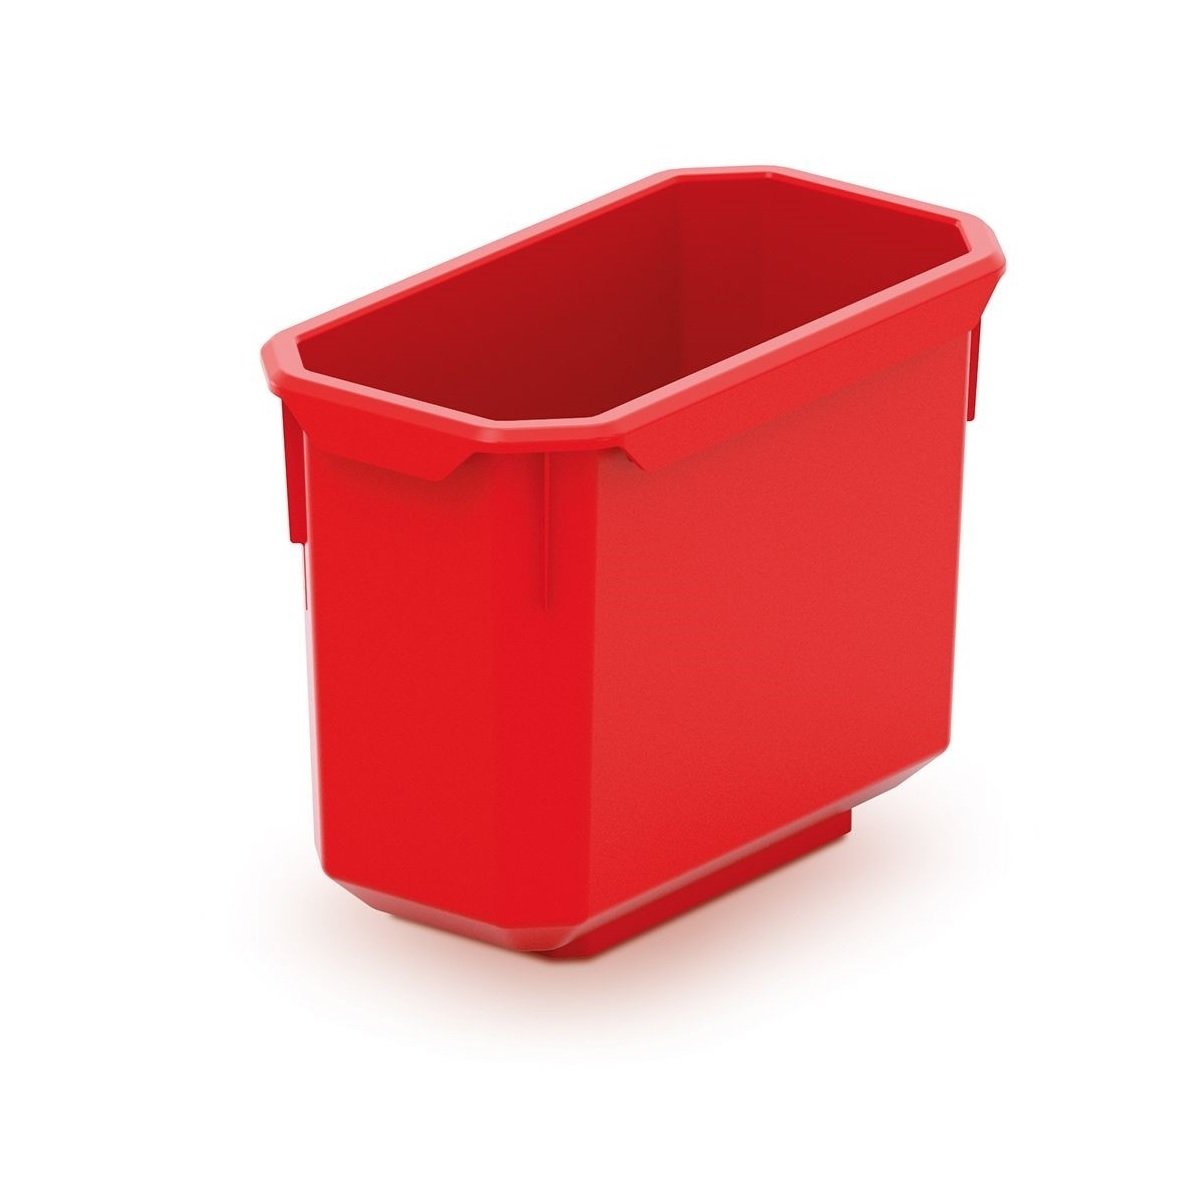 Sada 6 plastových boxov na náradie X BLOCK BOX 140x75x280 čierne / červené